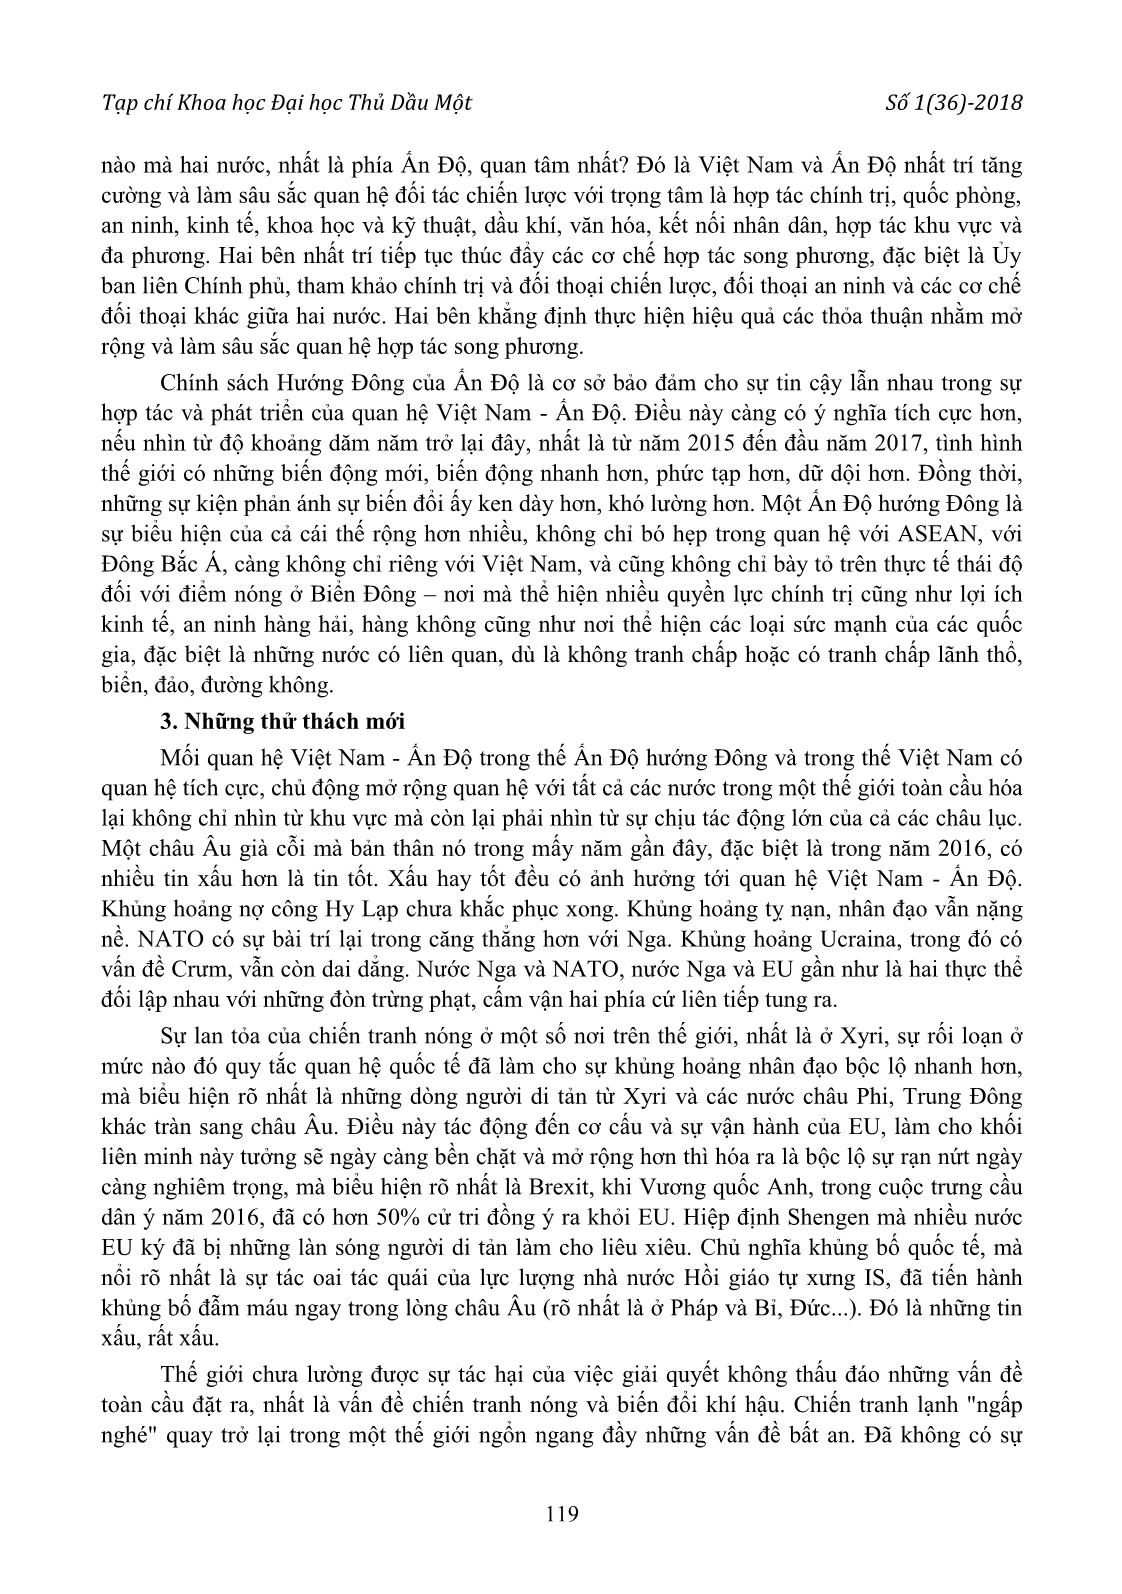 Về mối quan hệ Việt Nam - Ấn Độ hiện nay trang 4